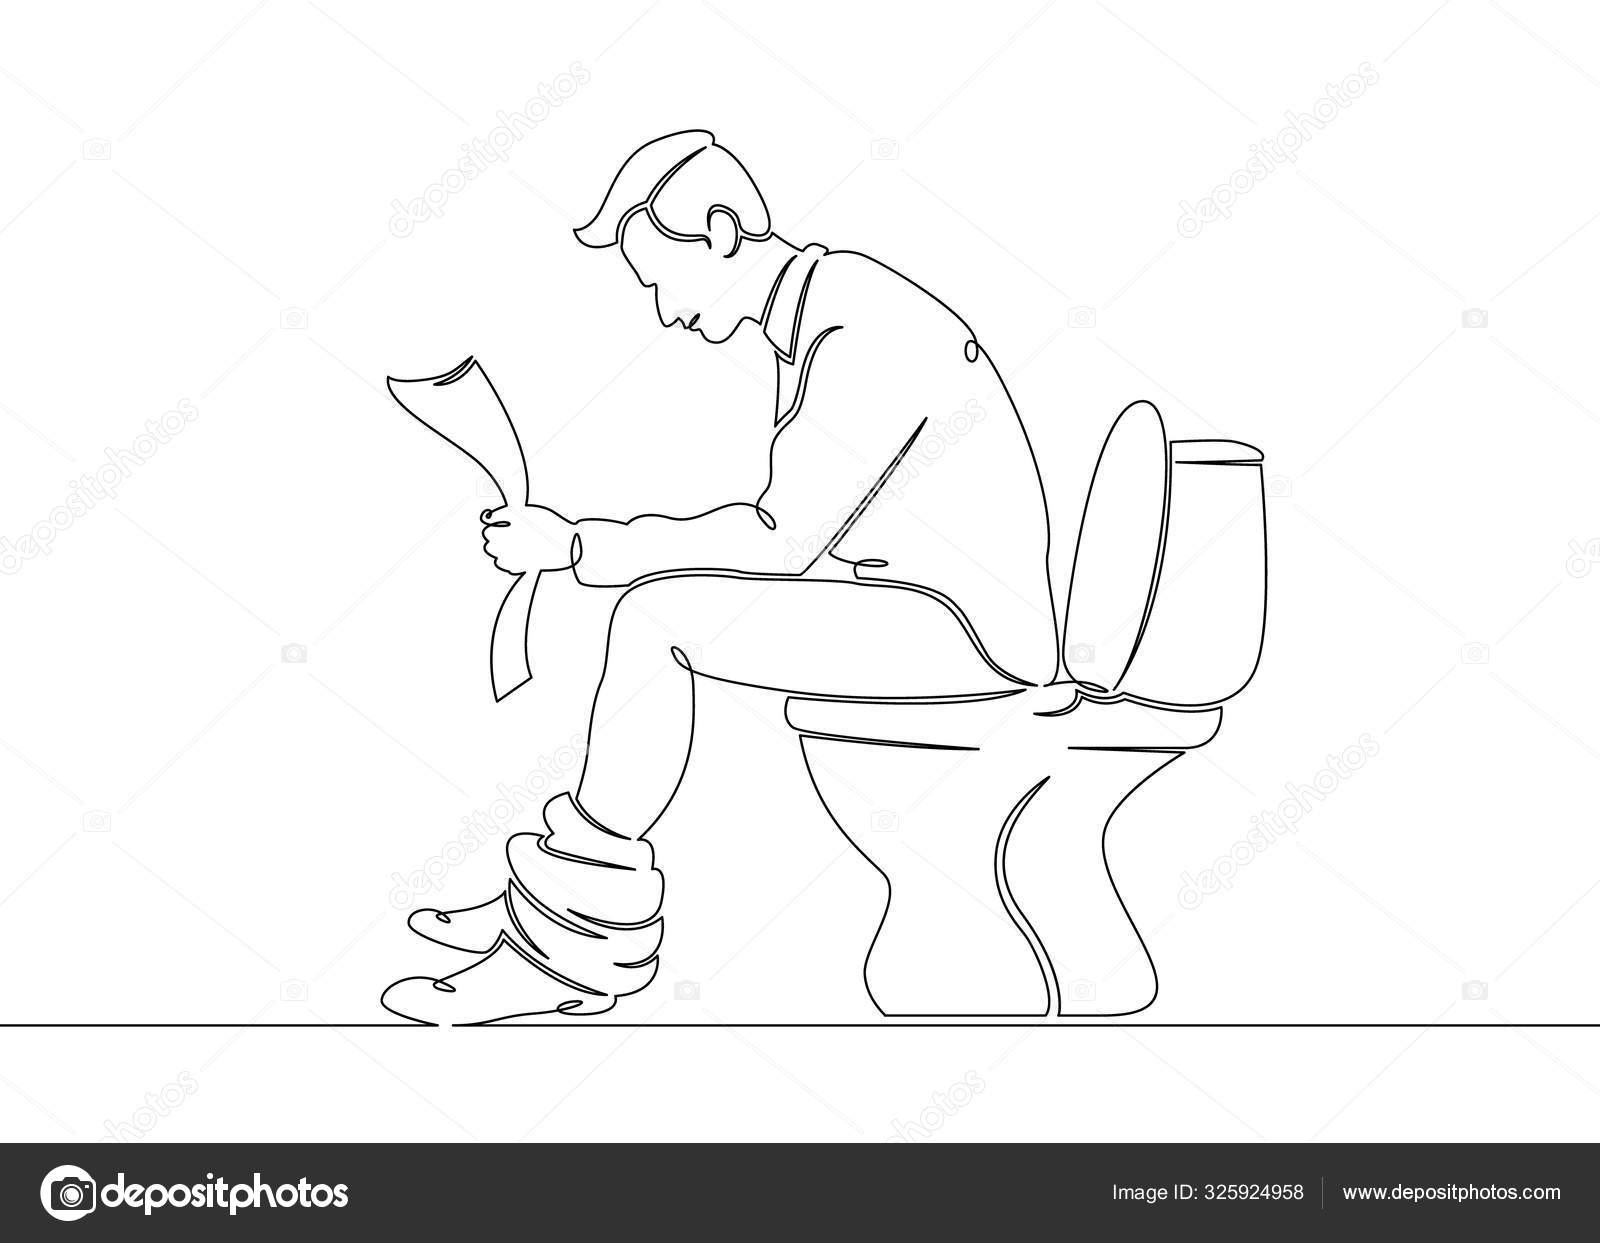 Мужчина сидит в туалете. Чел сидит на унитазе. Человечек сидит на унитазе.